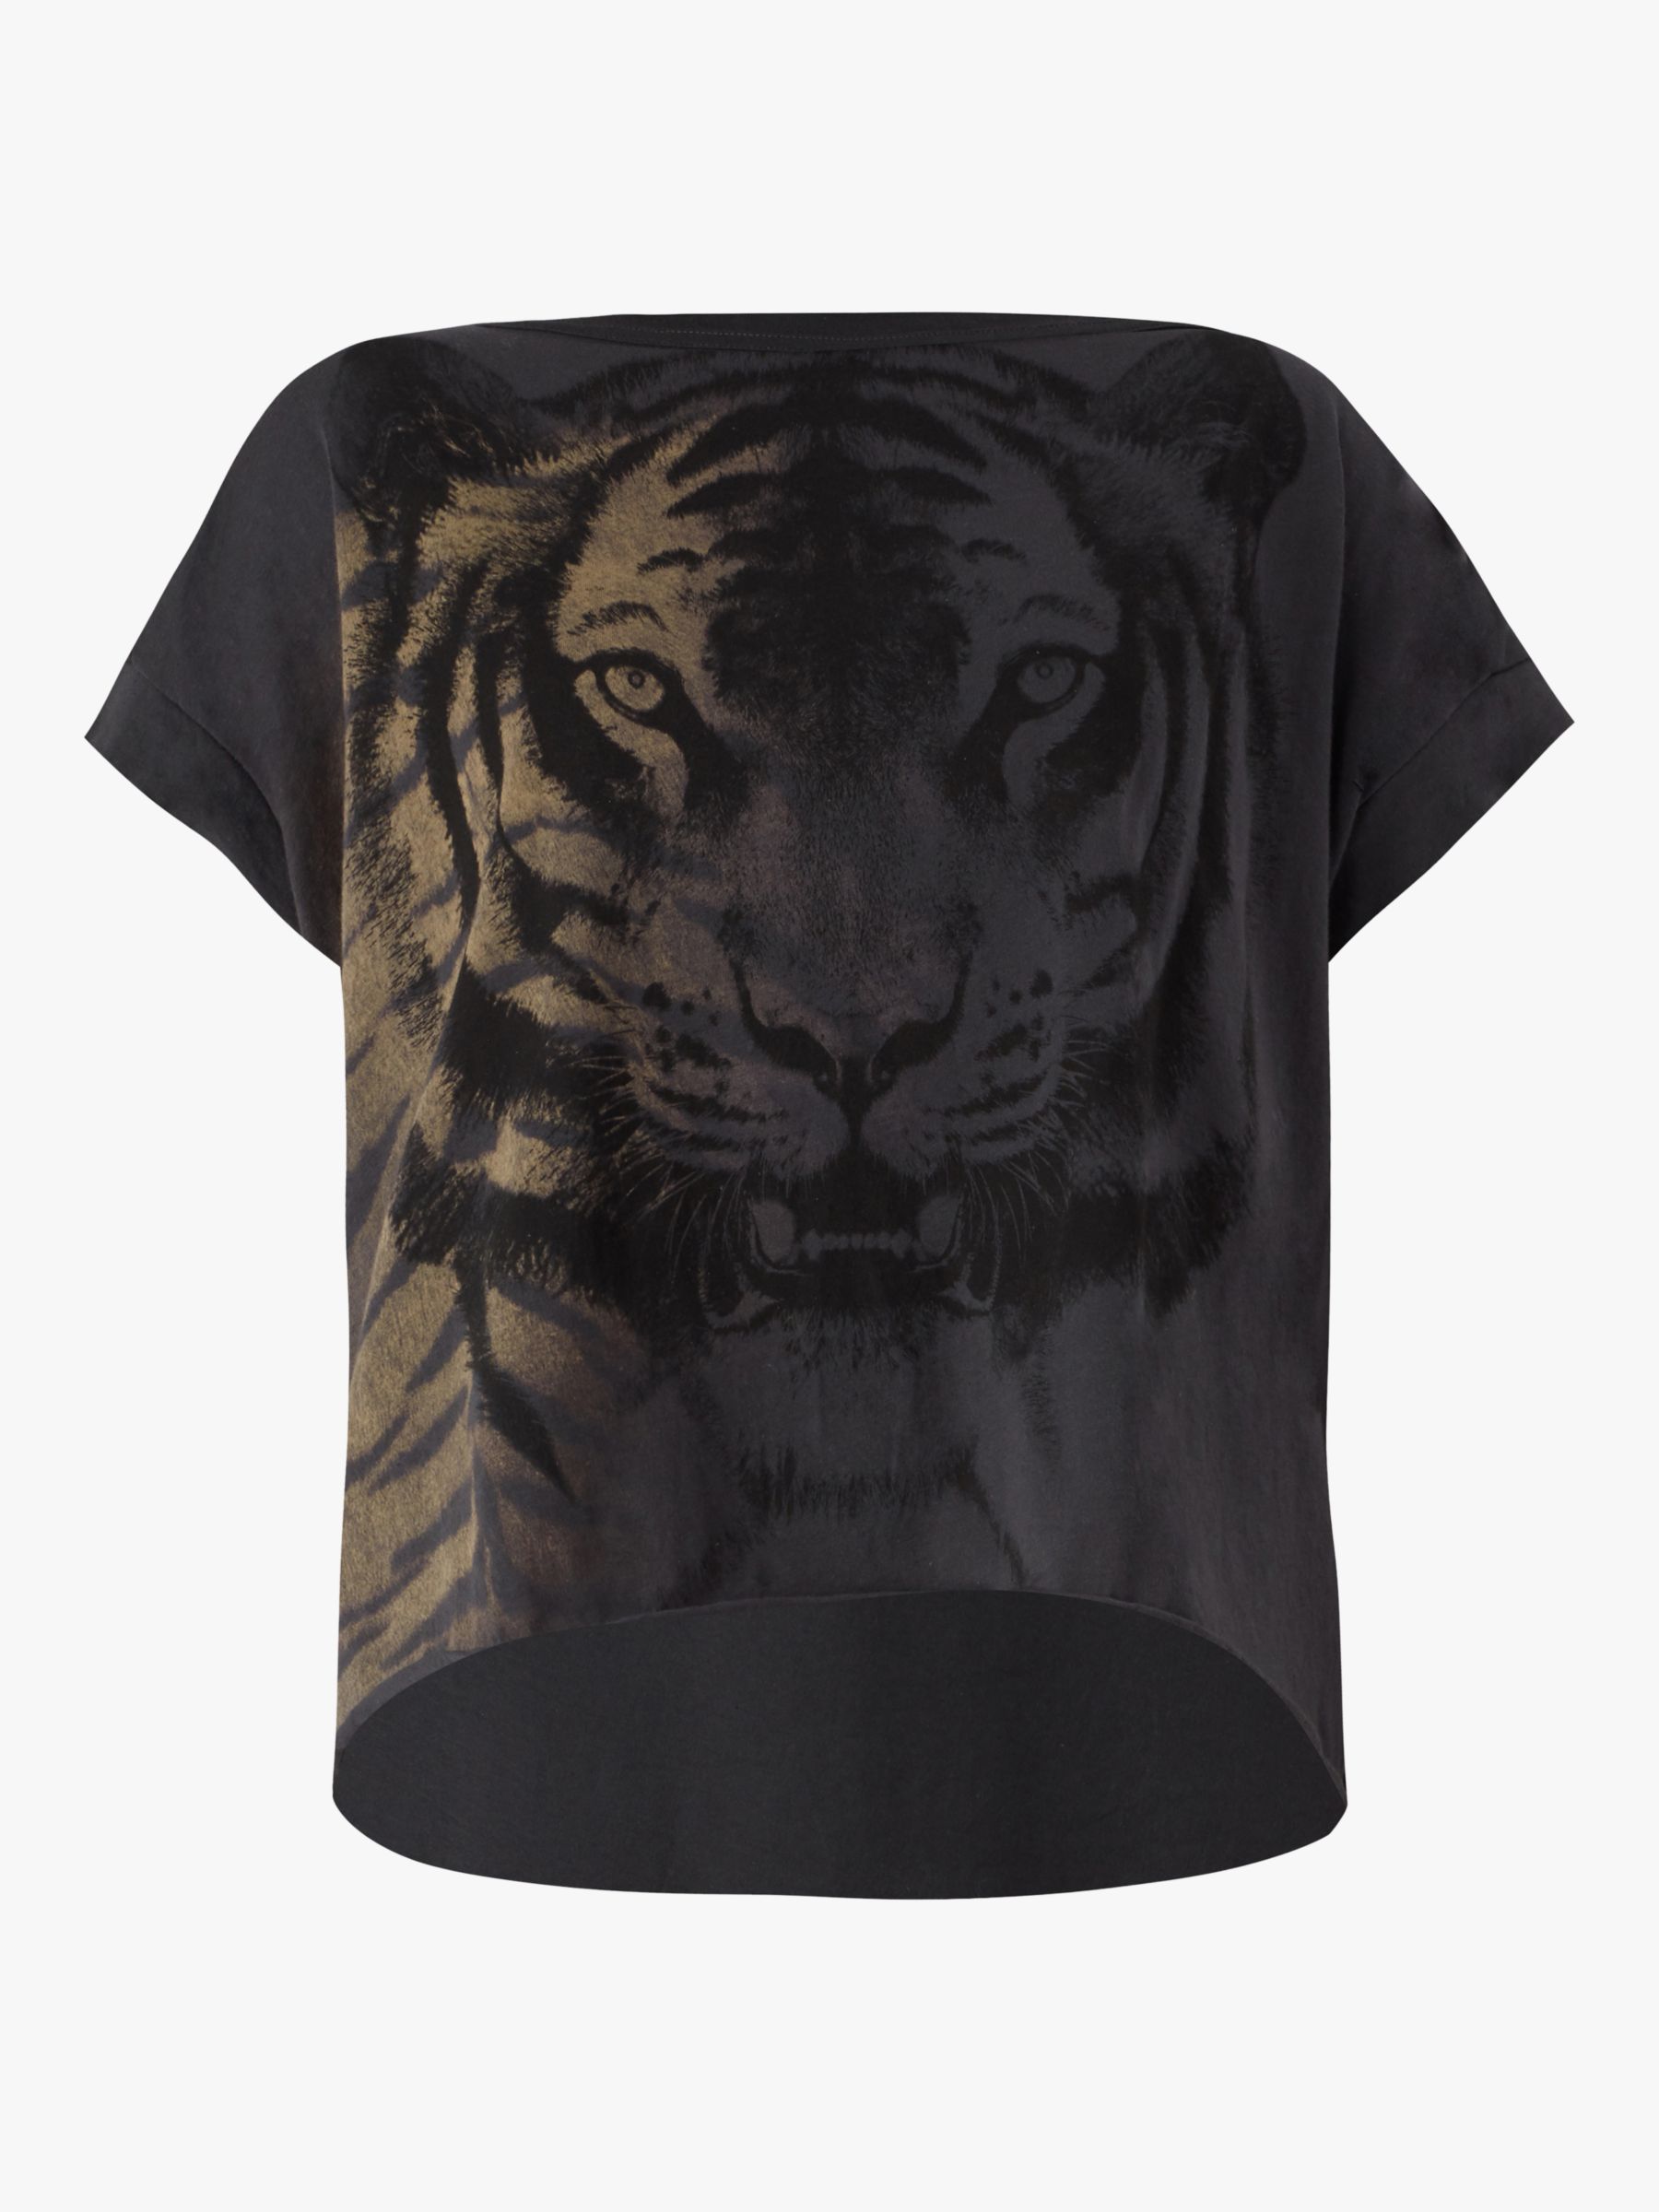 allsaints tiger t shirt